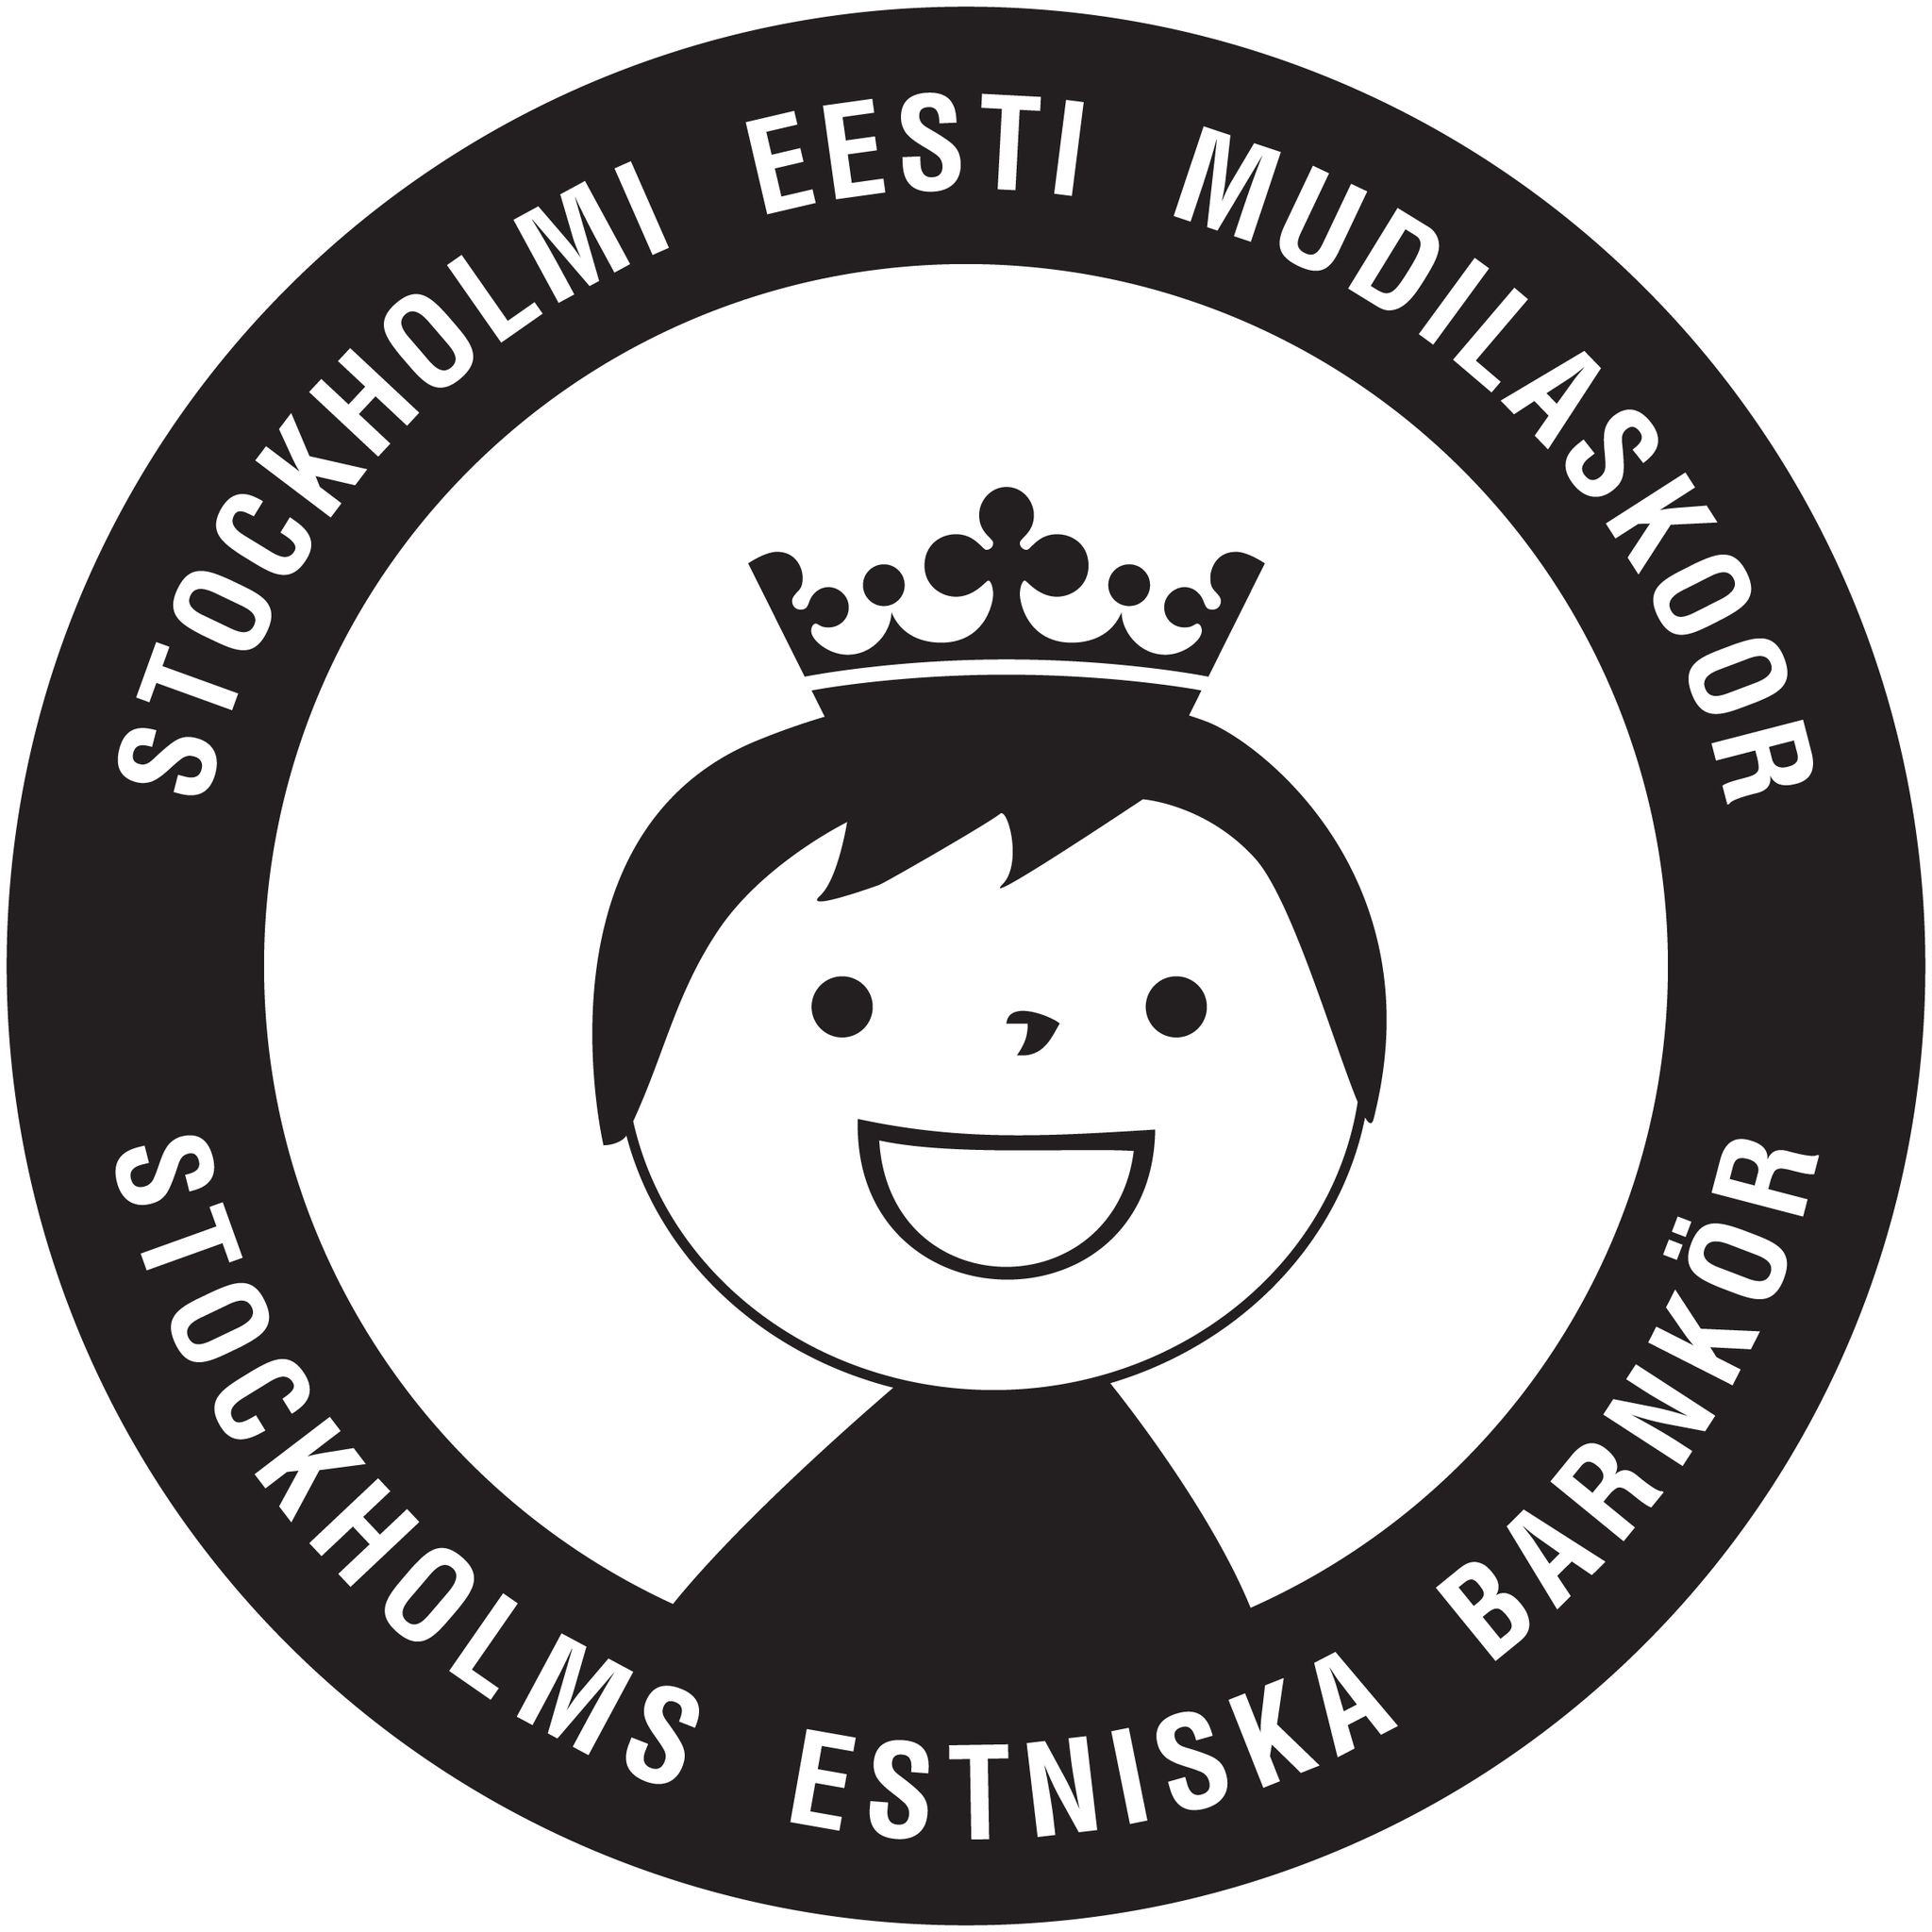 Stockholmi Eesti Mudilaskoor